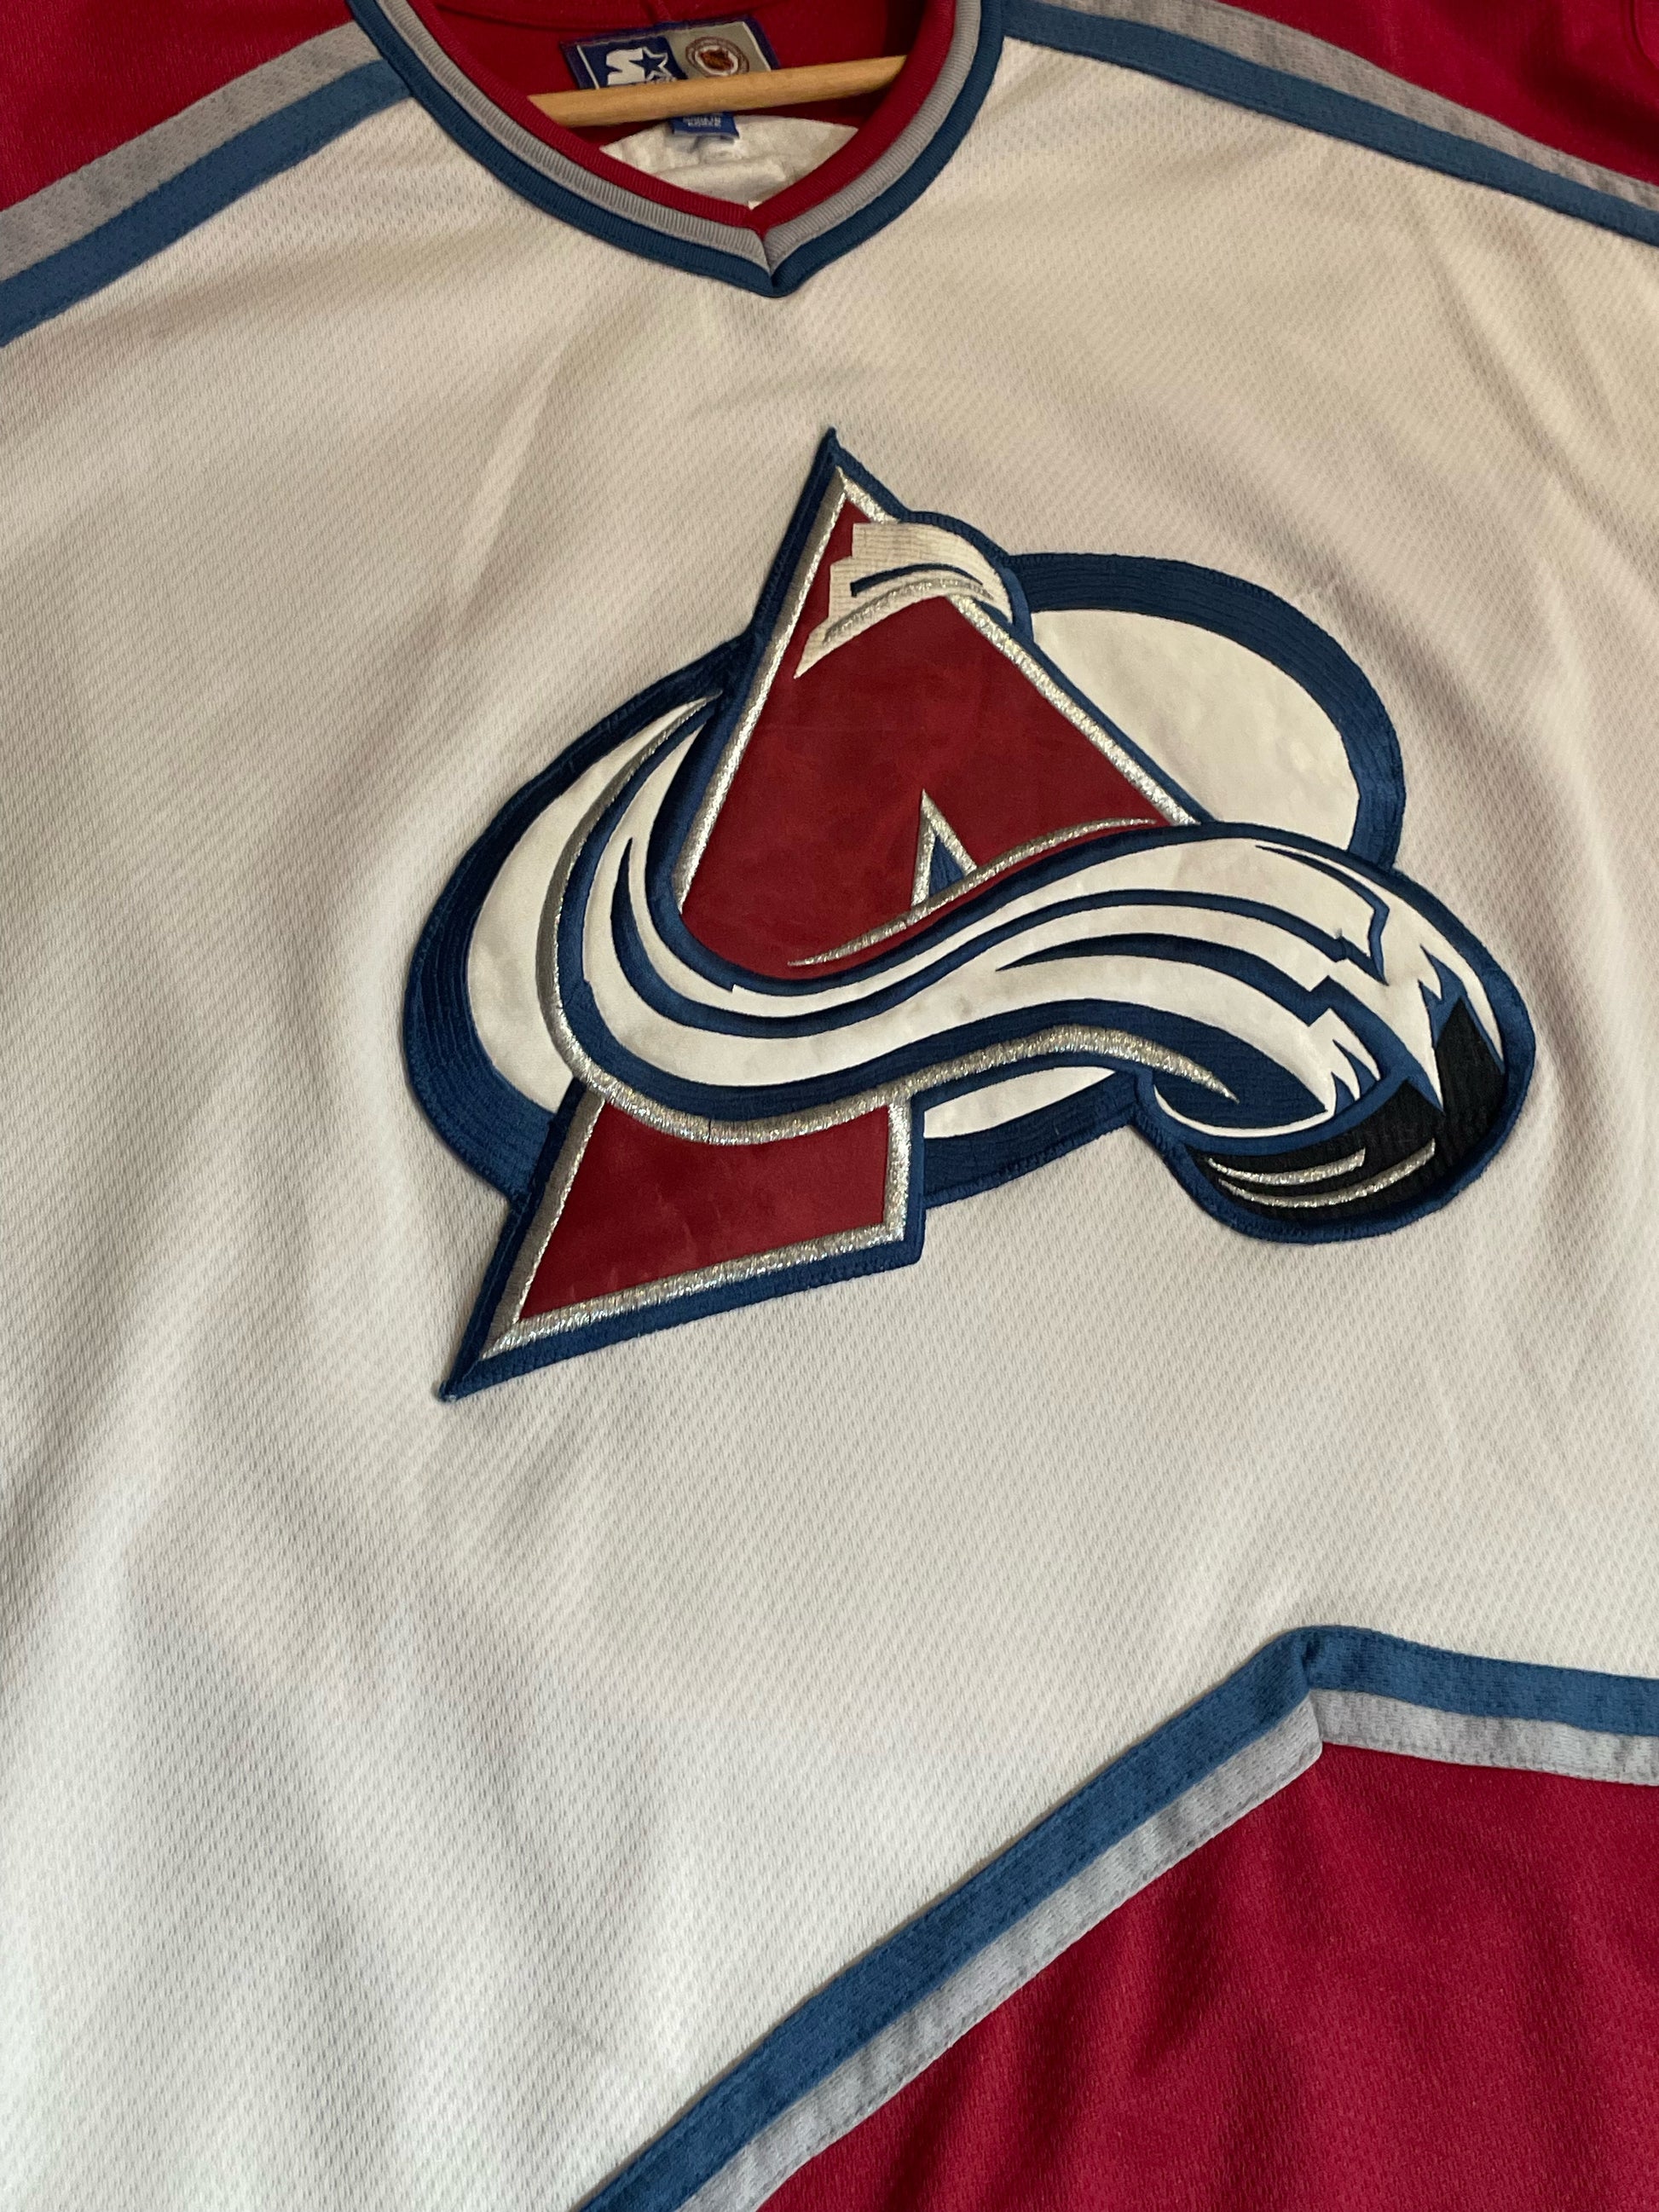 Vintage Colorado Avalanche Starter Jersey Size Small White Nhl Hockey 90s